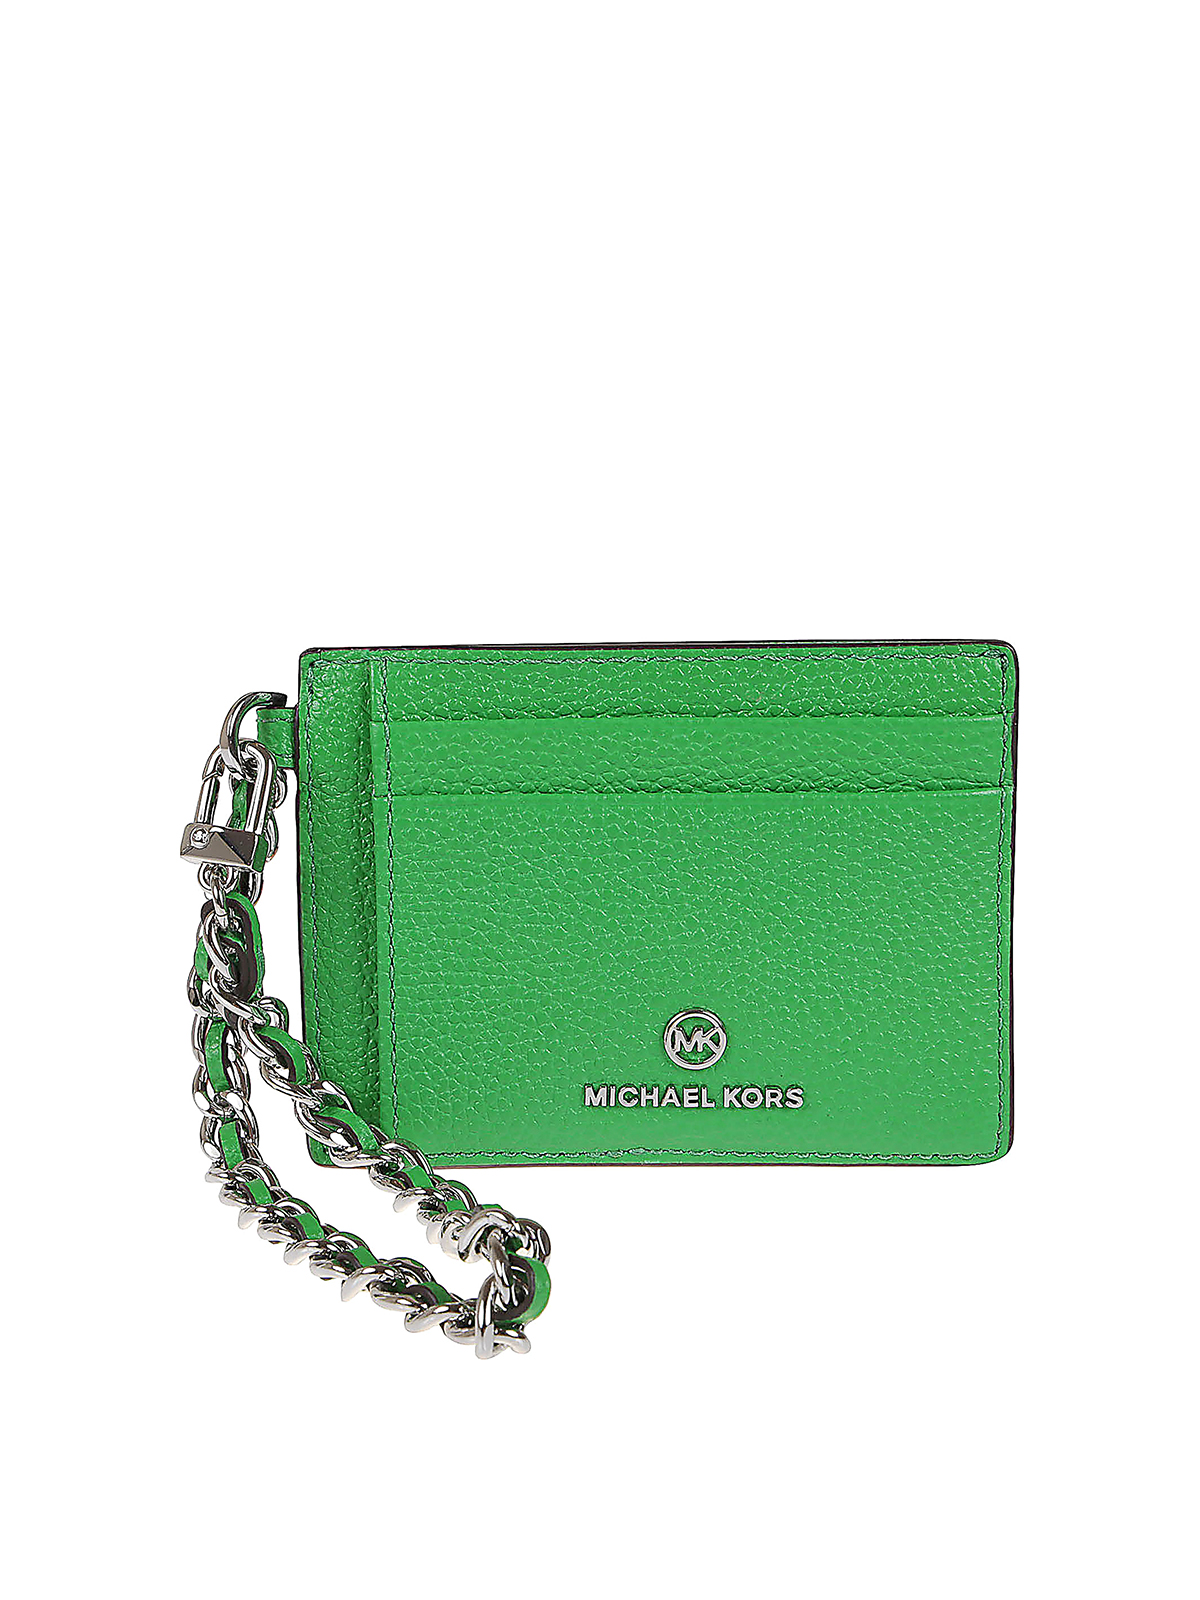 MICHAEL KORS Mercer Moss Green Leather Medium Messenger Crossbody Bag | eBay